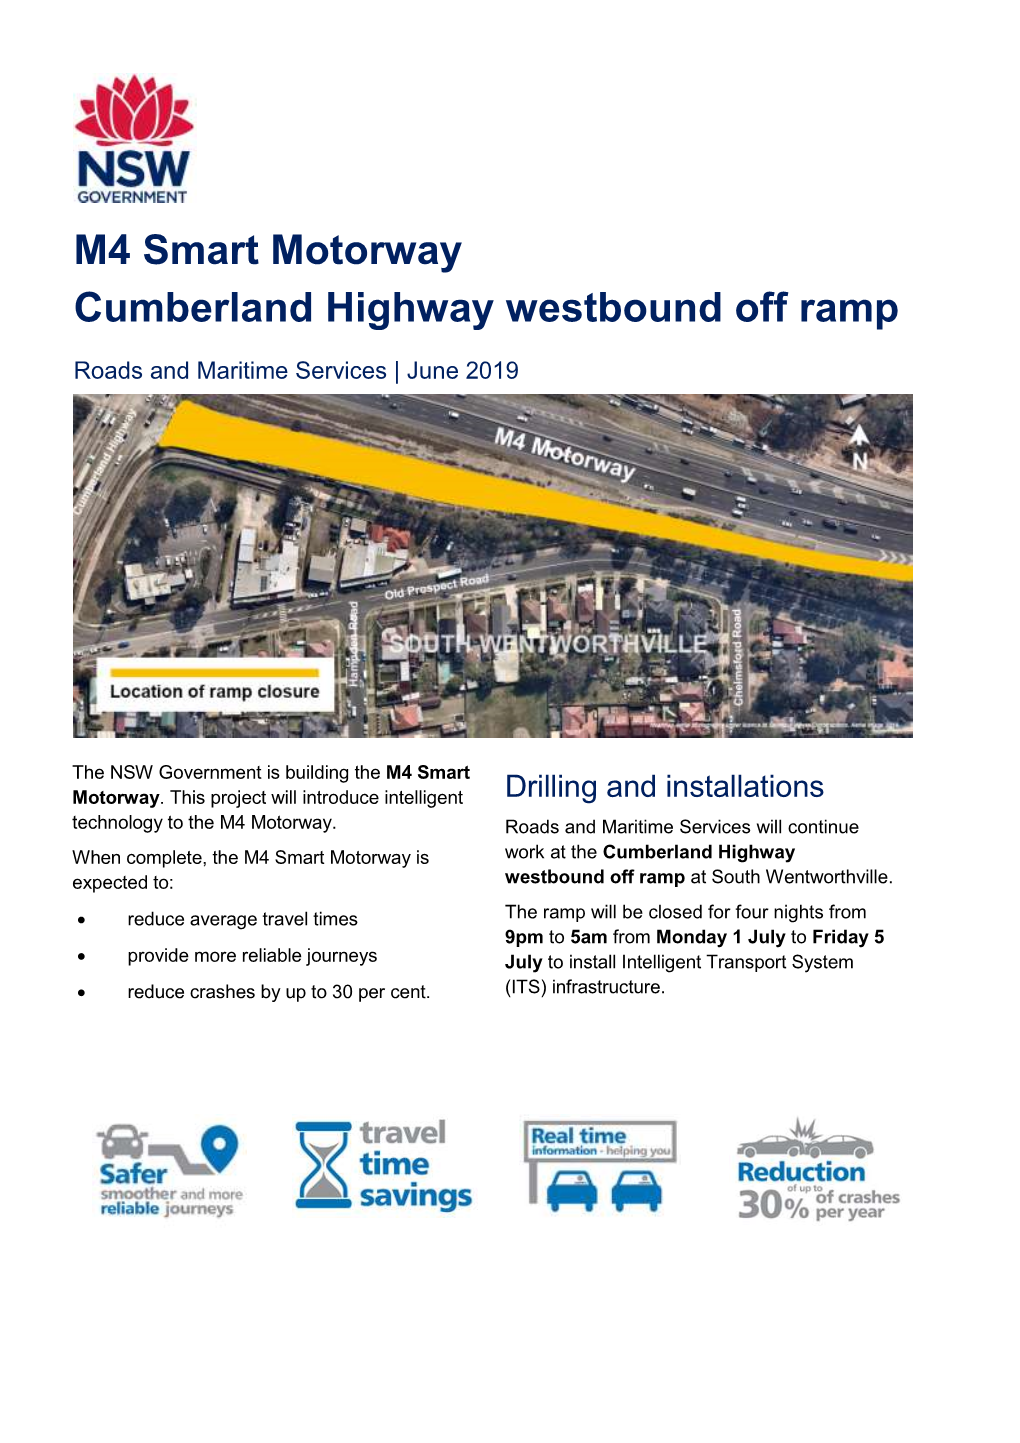 M4 Smart Motorway Cumberland Highway Westbound Off Ramp